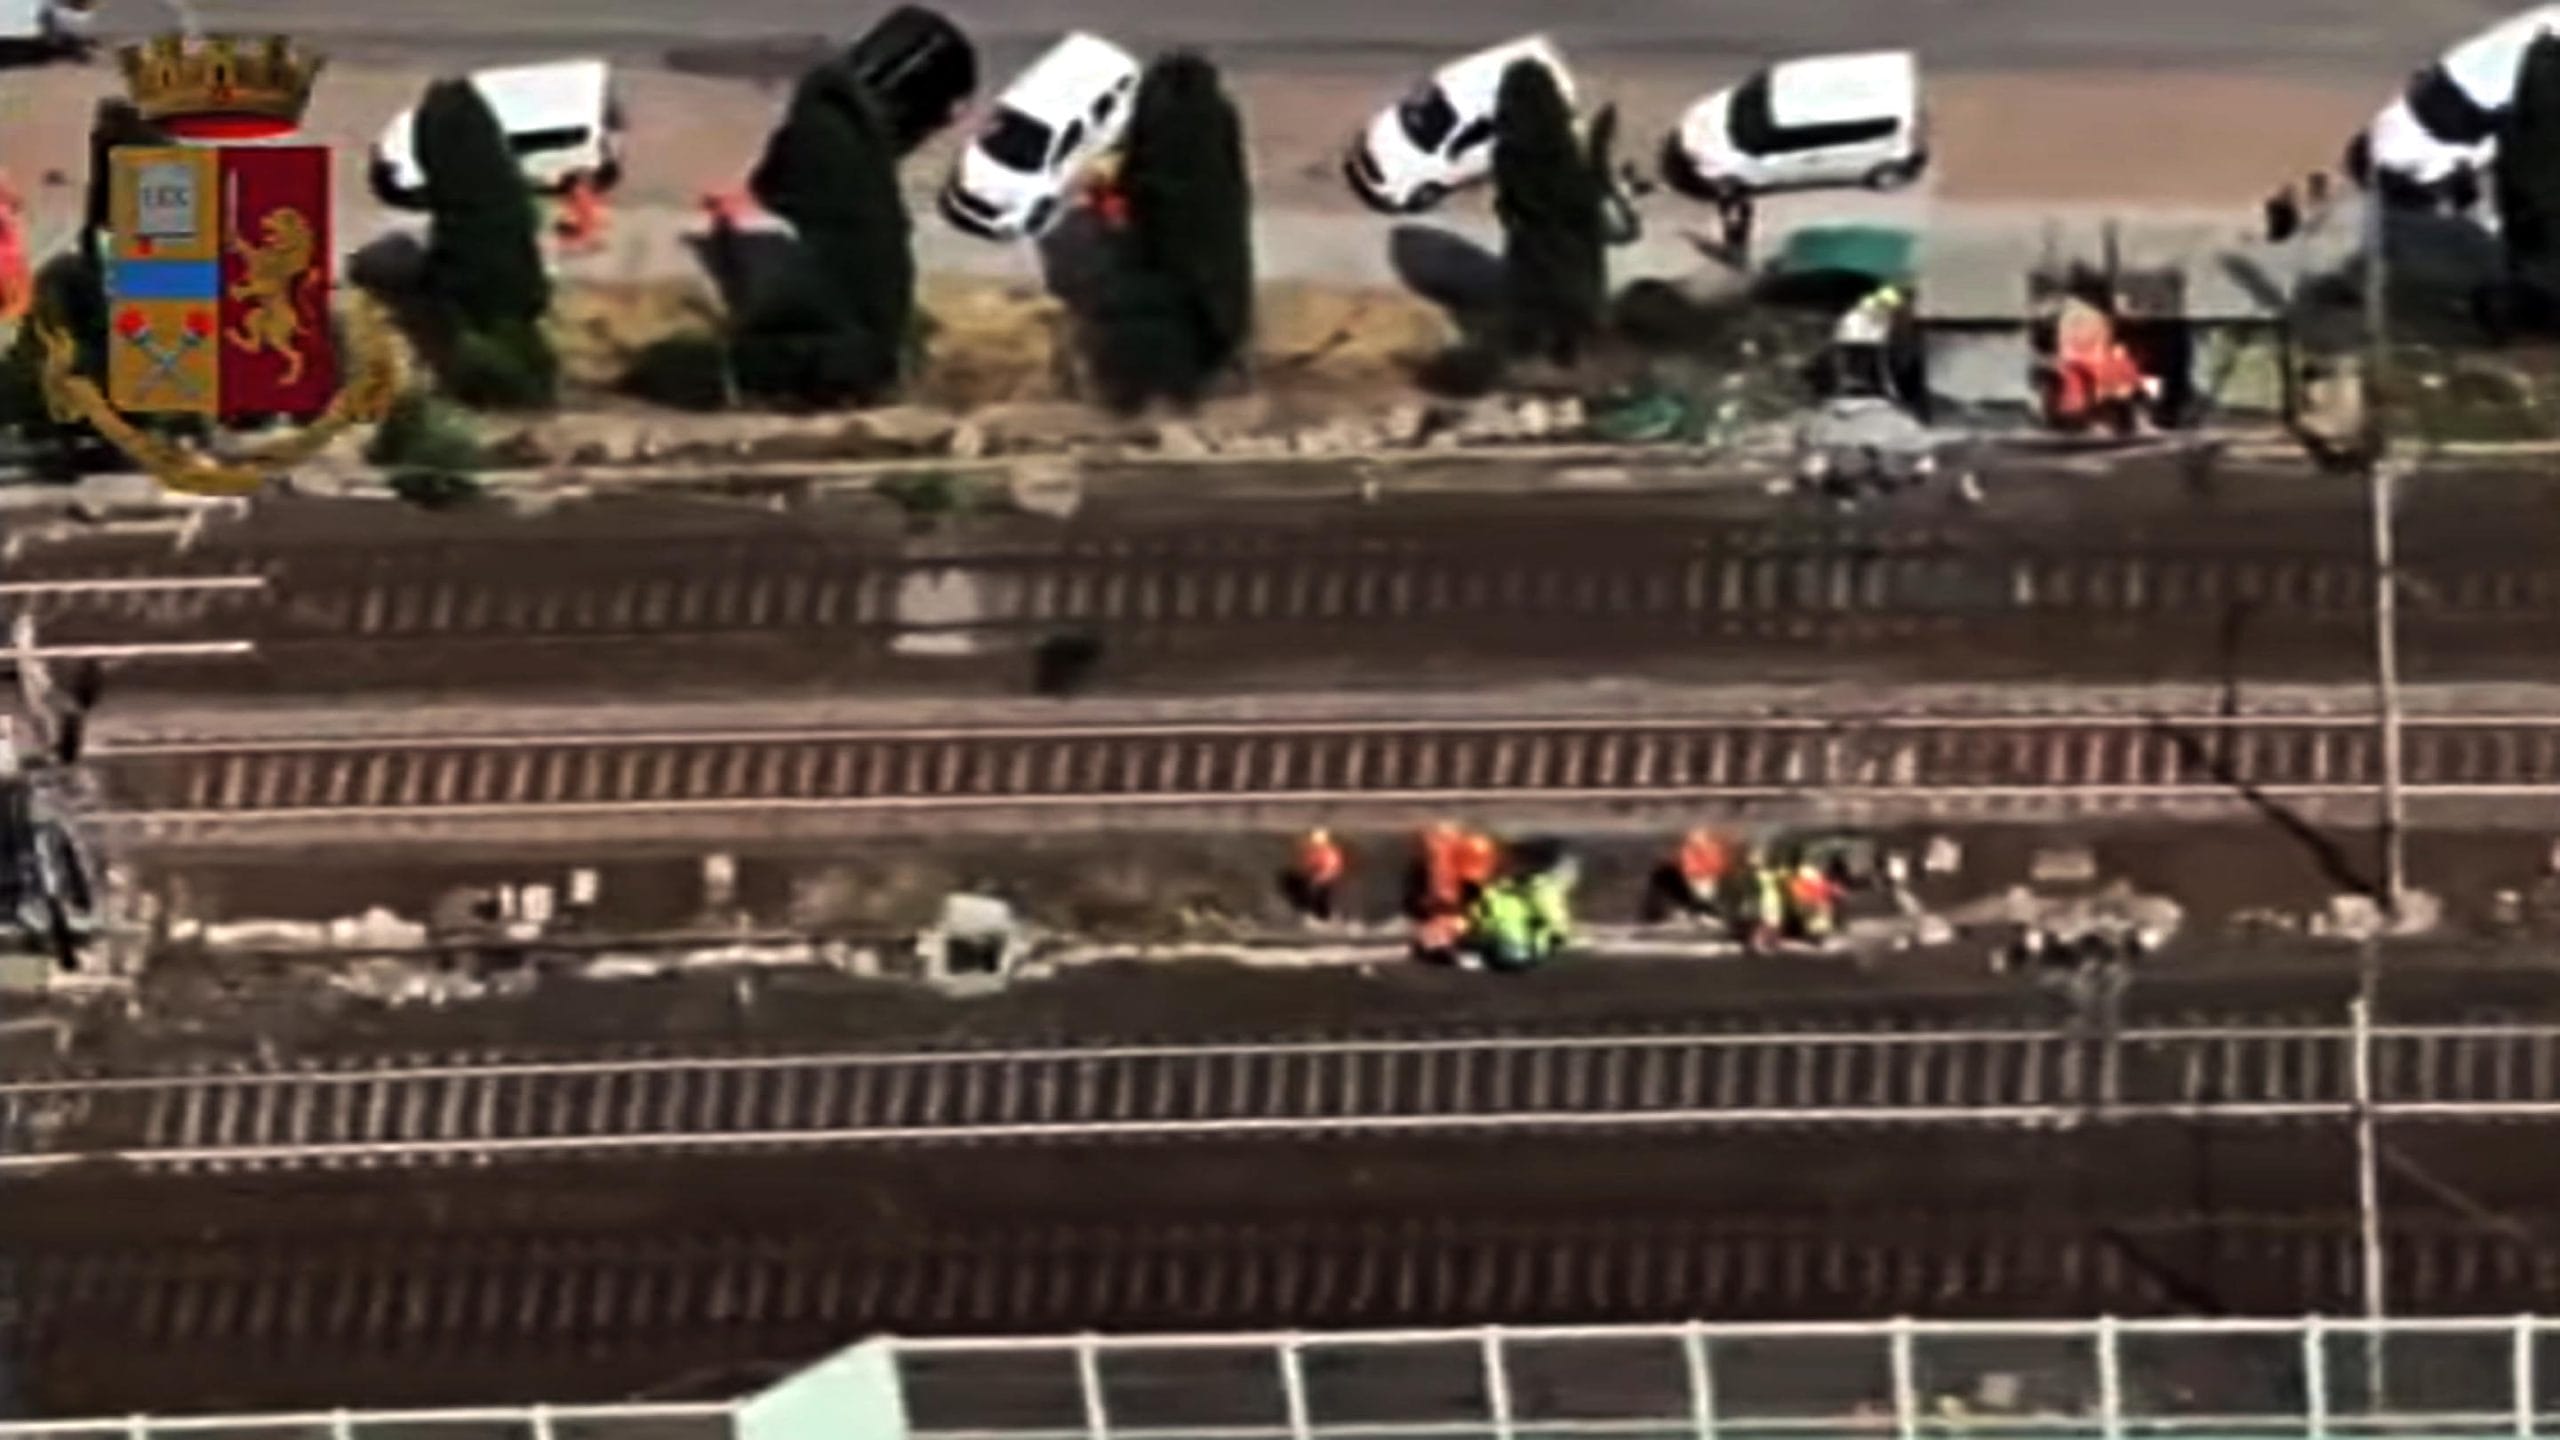 Attentati linea AV Firenze-Bologna, un arresto. Secondo la DDA il destinatario della misura è “inserito nel contesto anarchico”